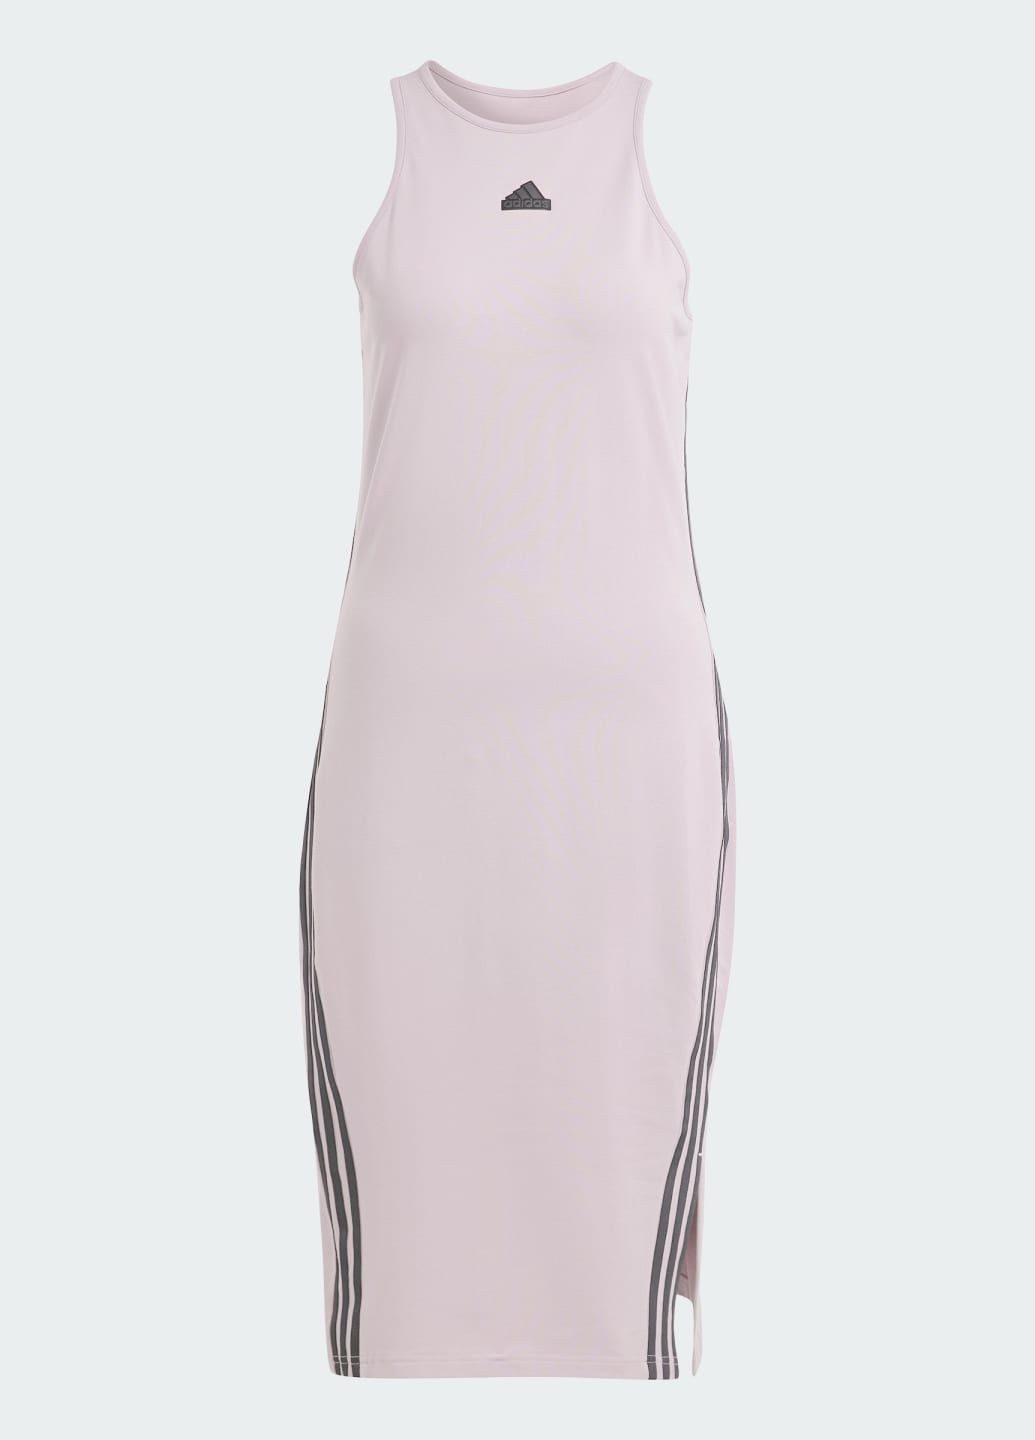 Фіолетова спортивна сукня future icons 3-stripes adidas з логотипом